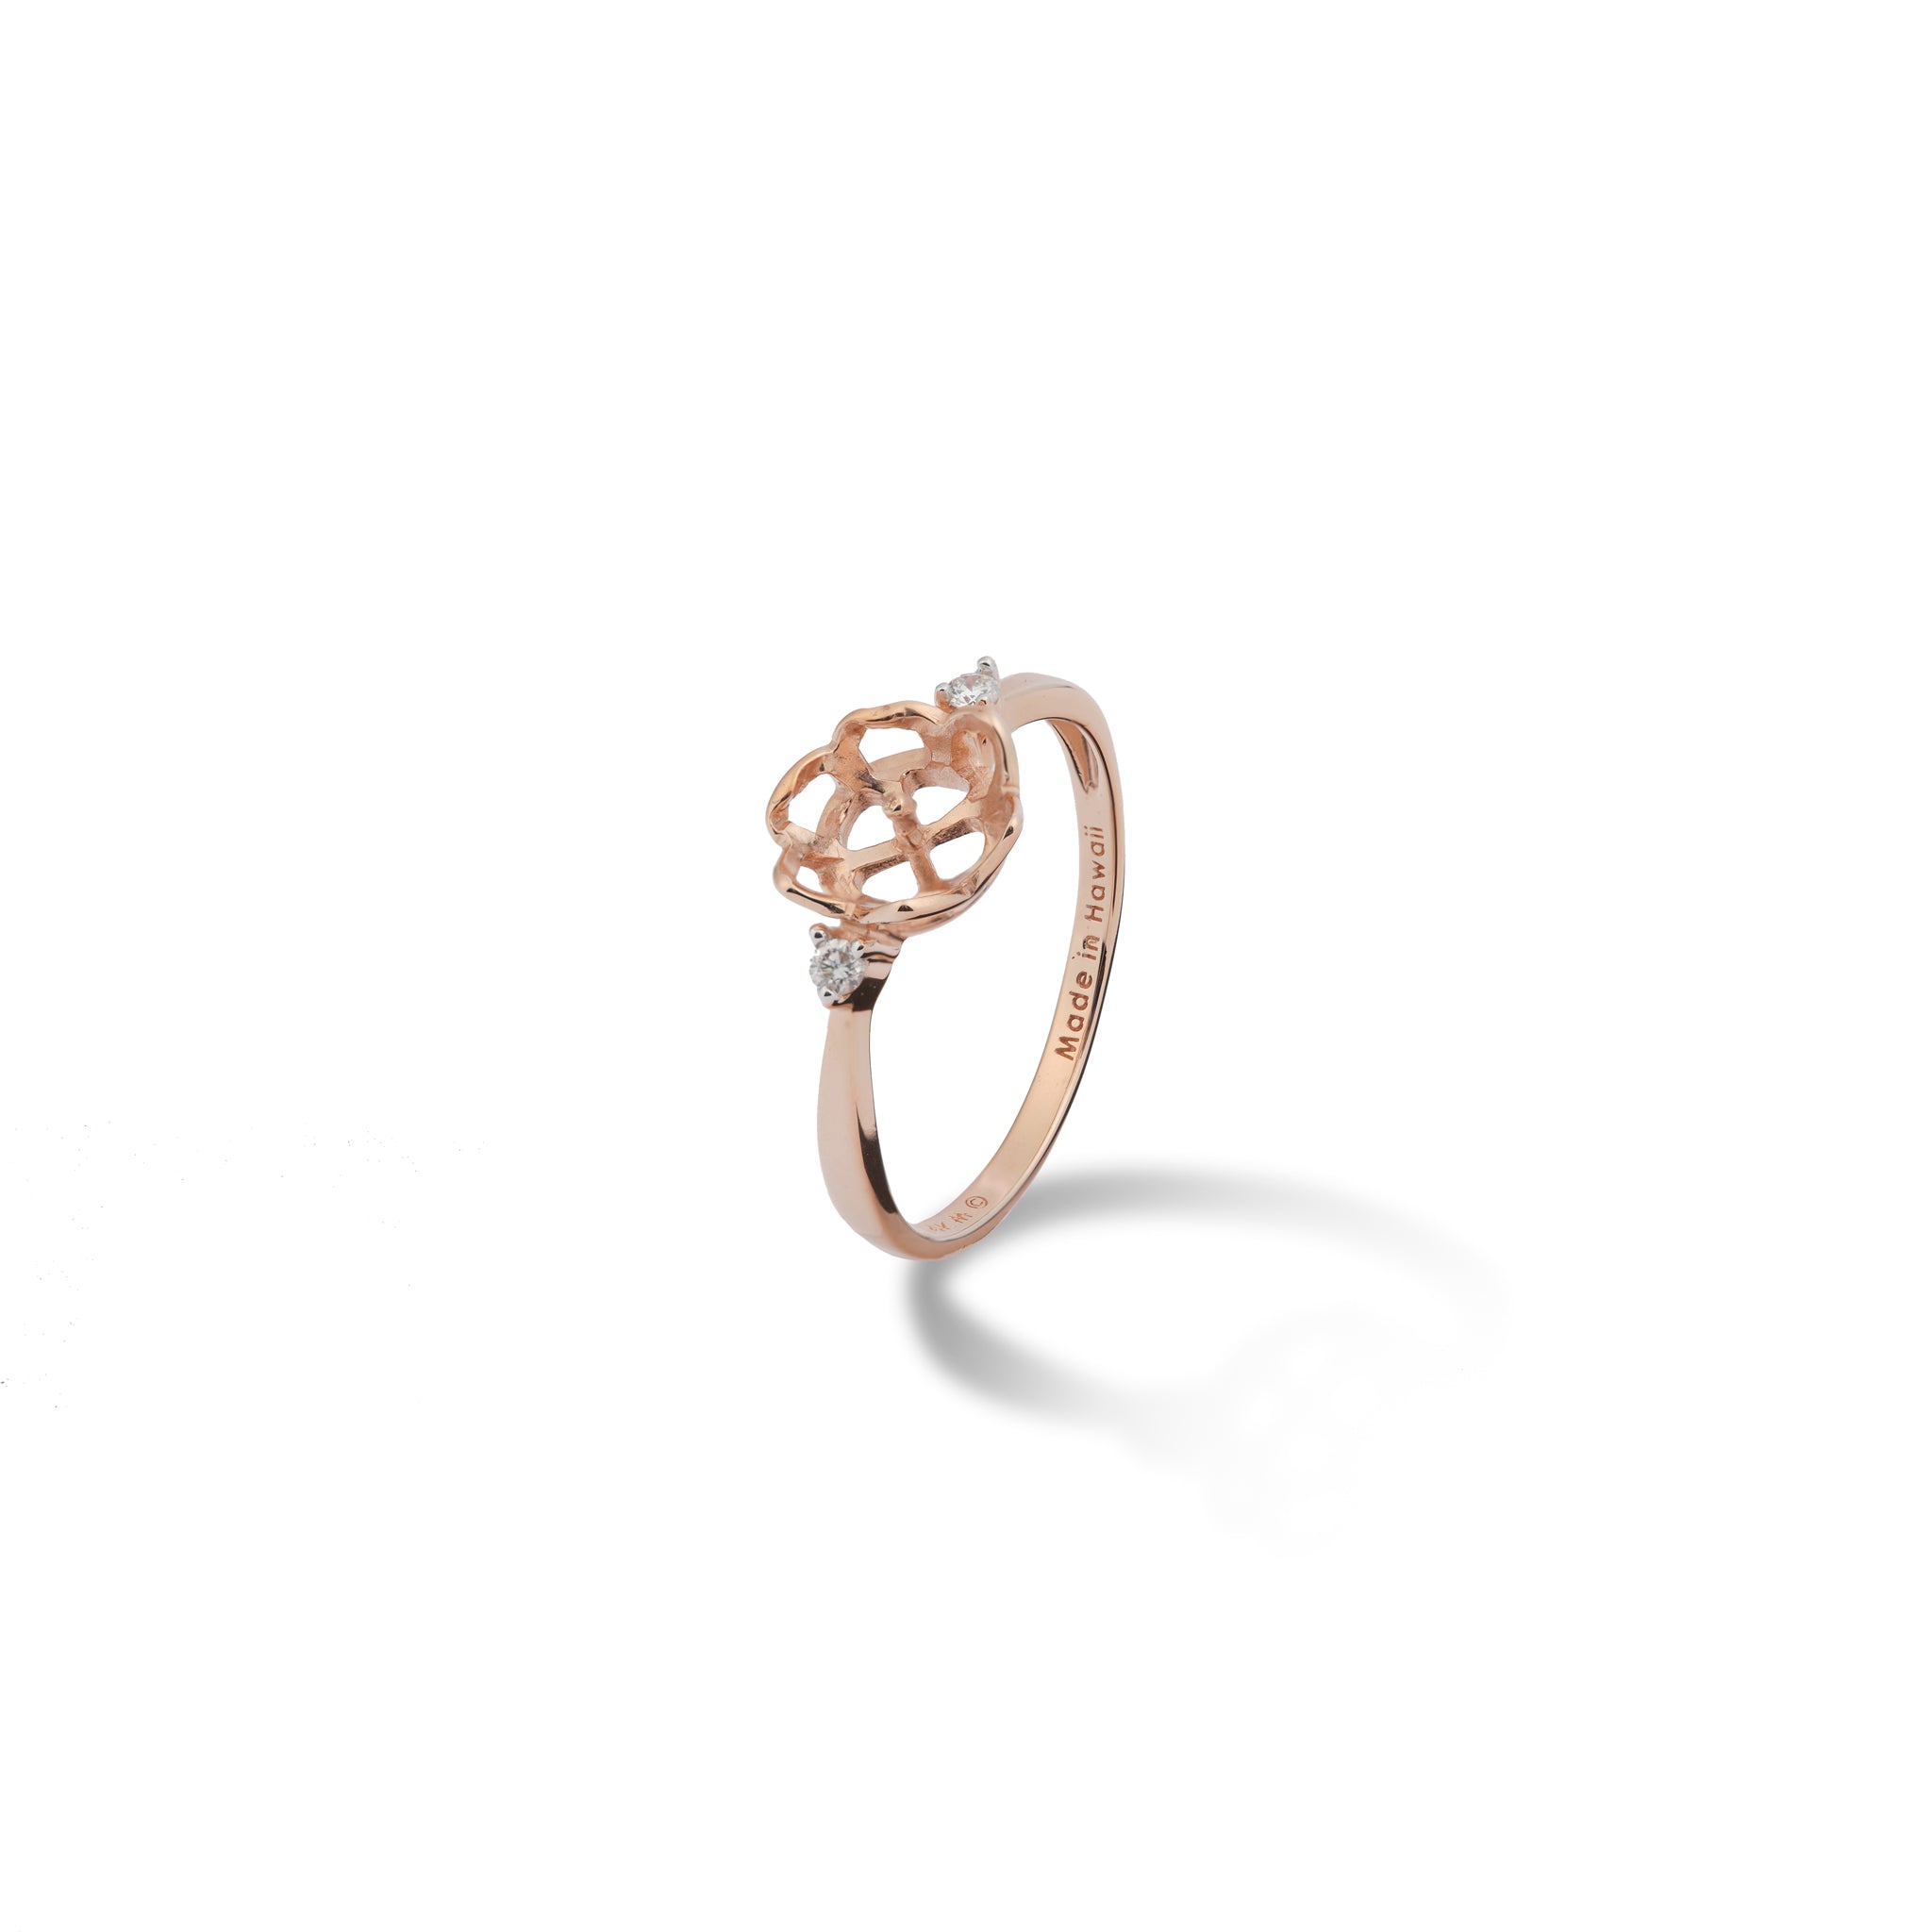 Choisissez un anneau de couronne perle en or rose avec des diamants